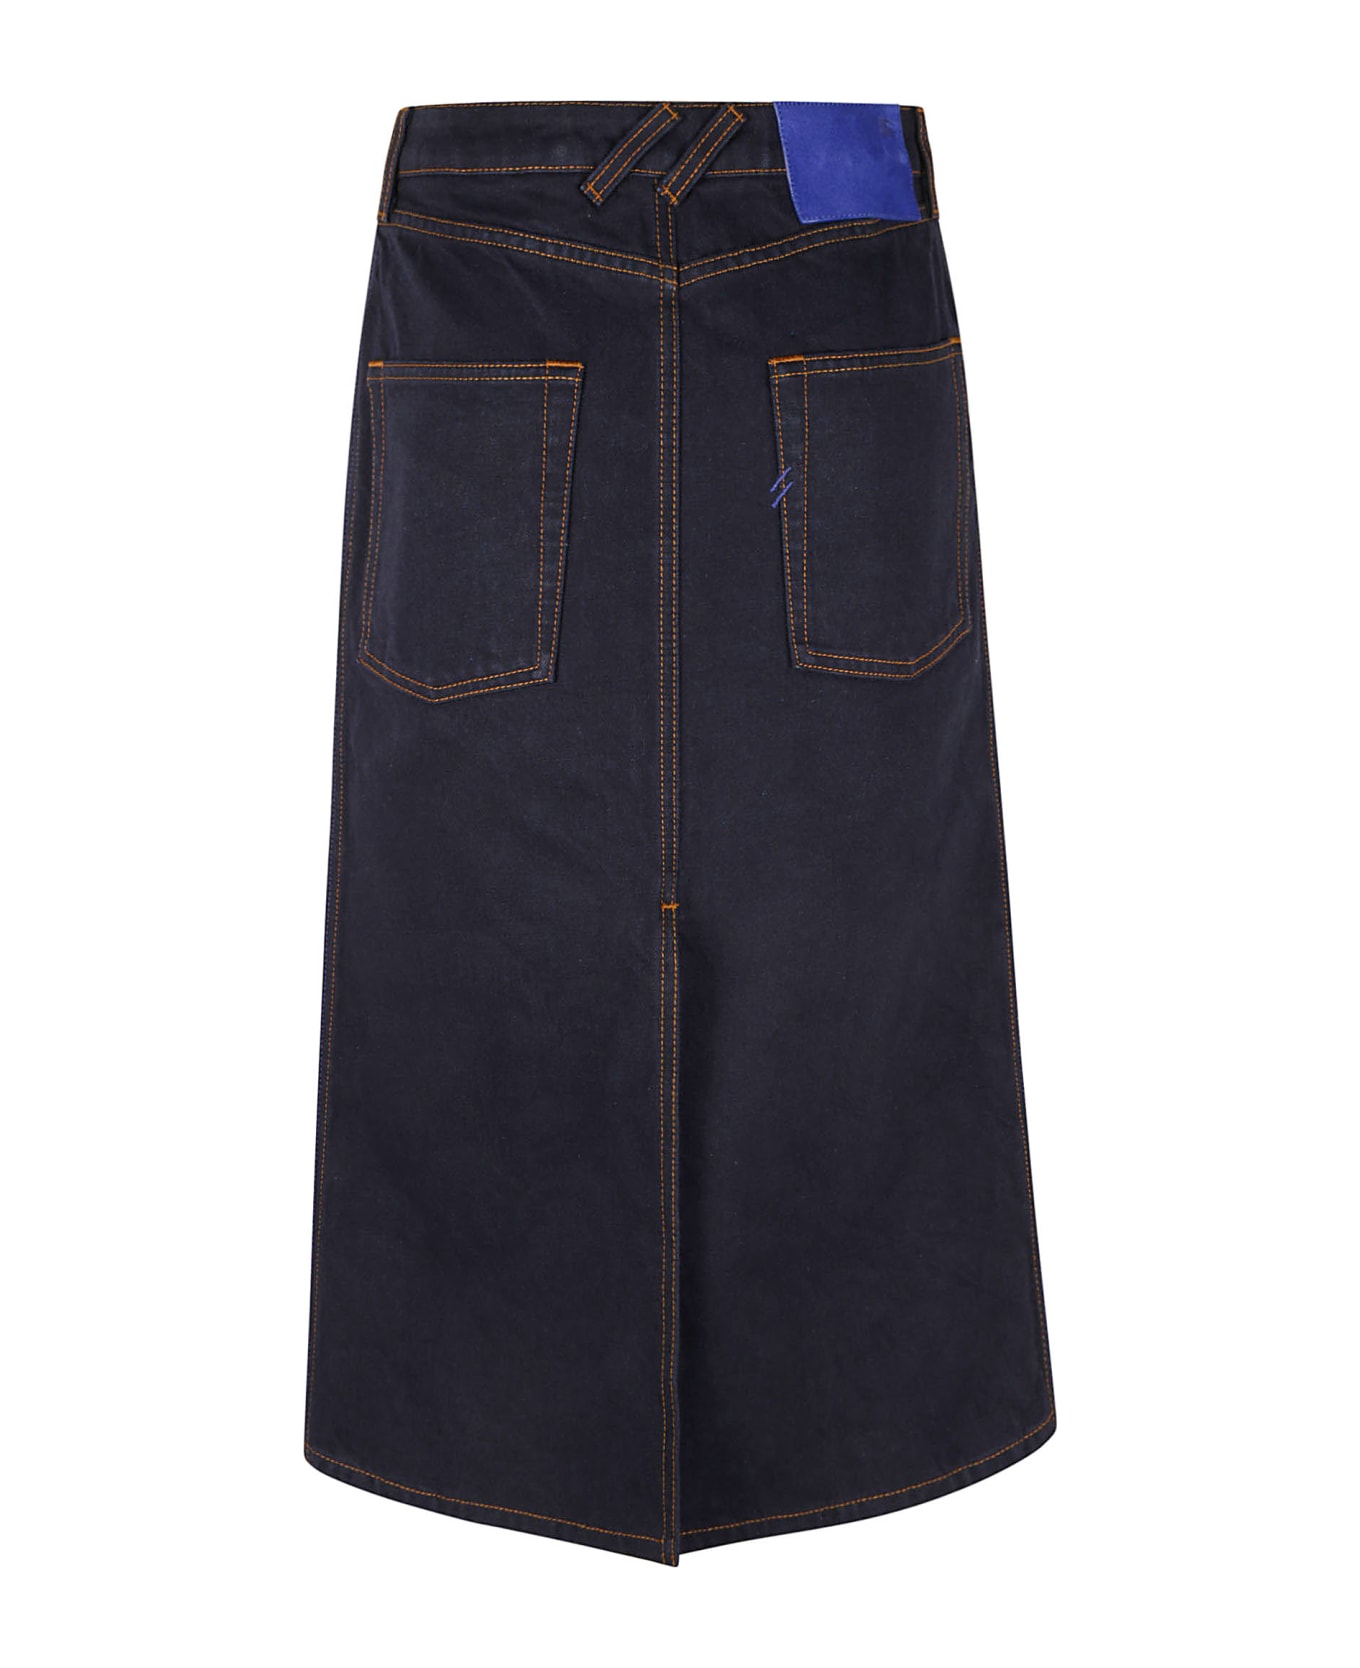 Burberry Denim Skirt - Indigo Blue